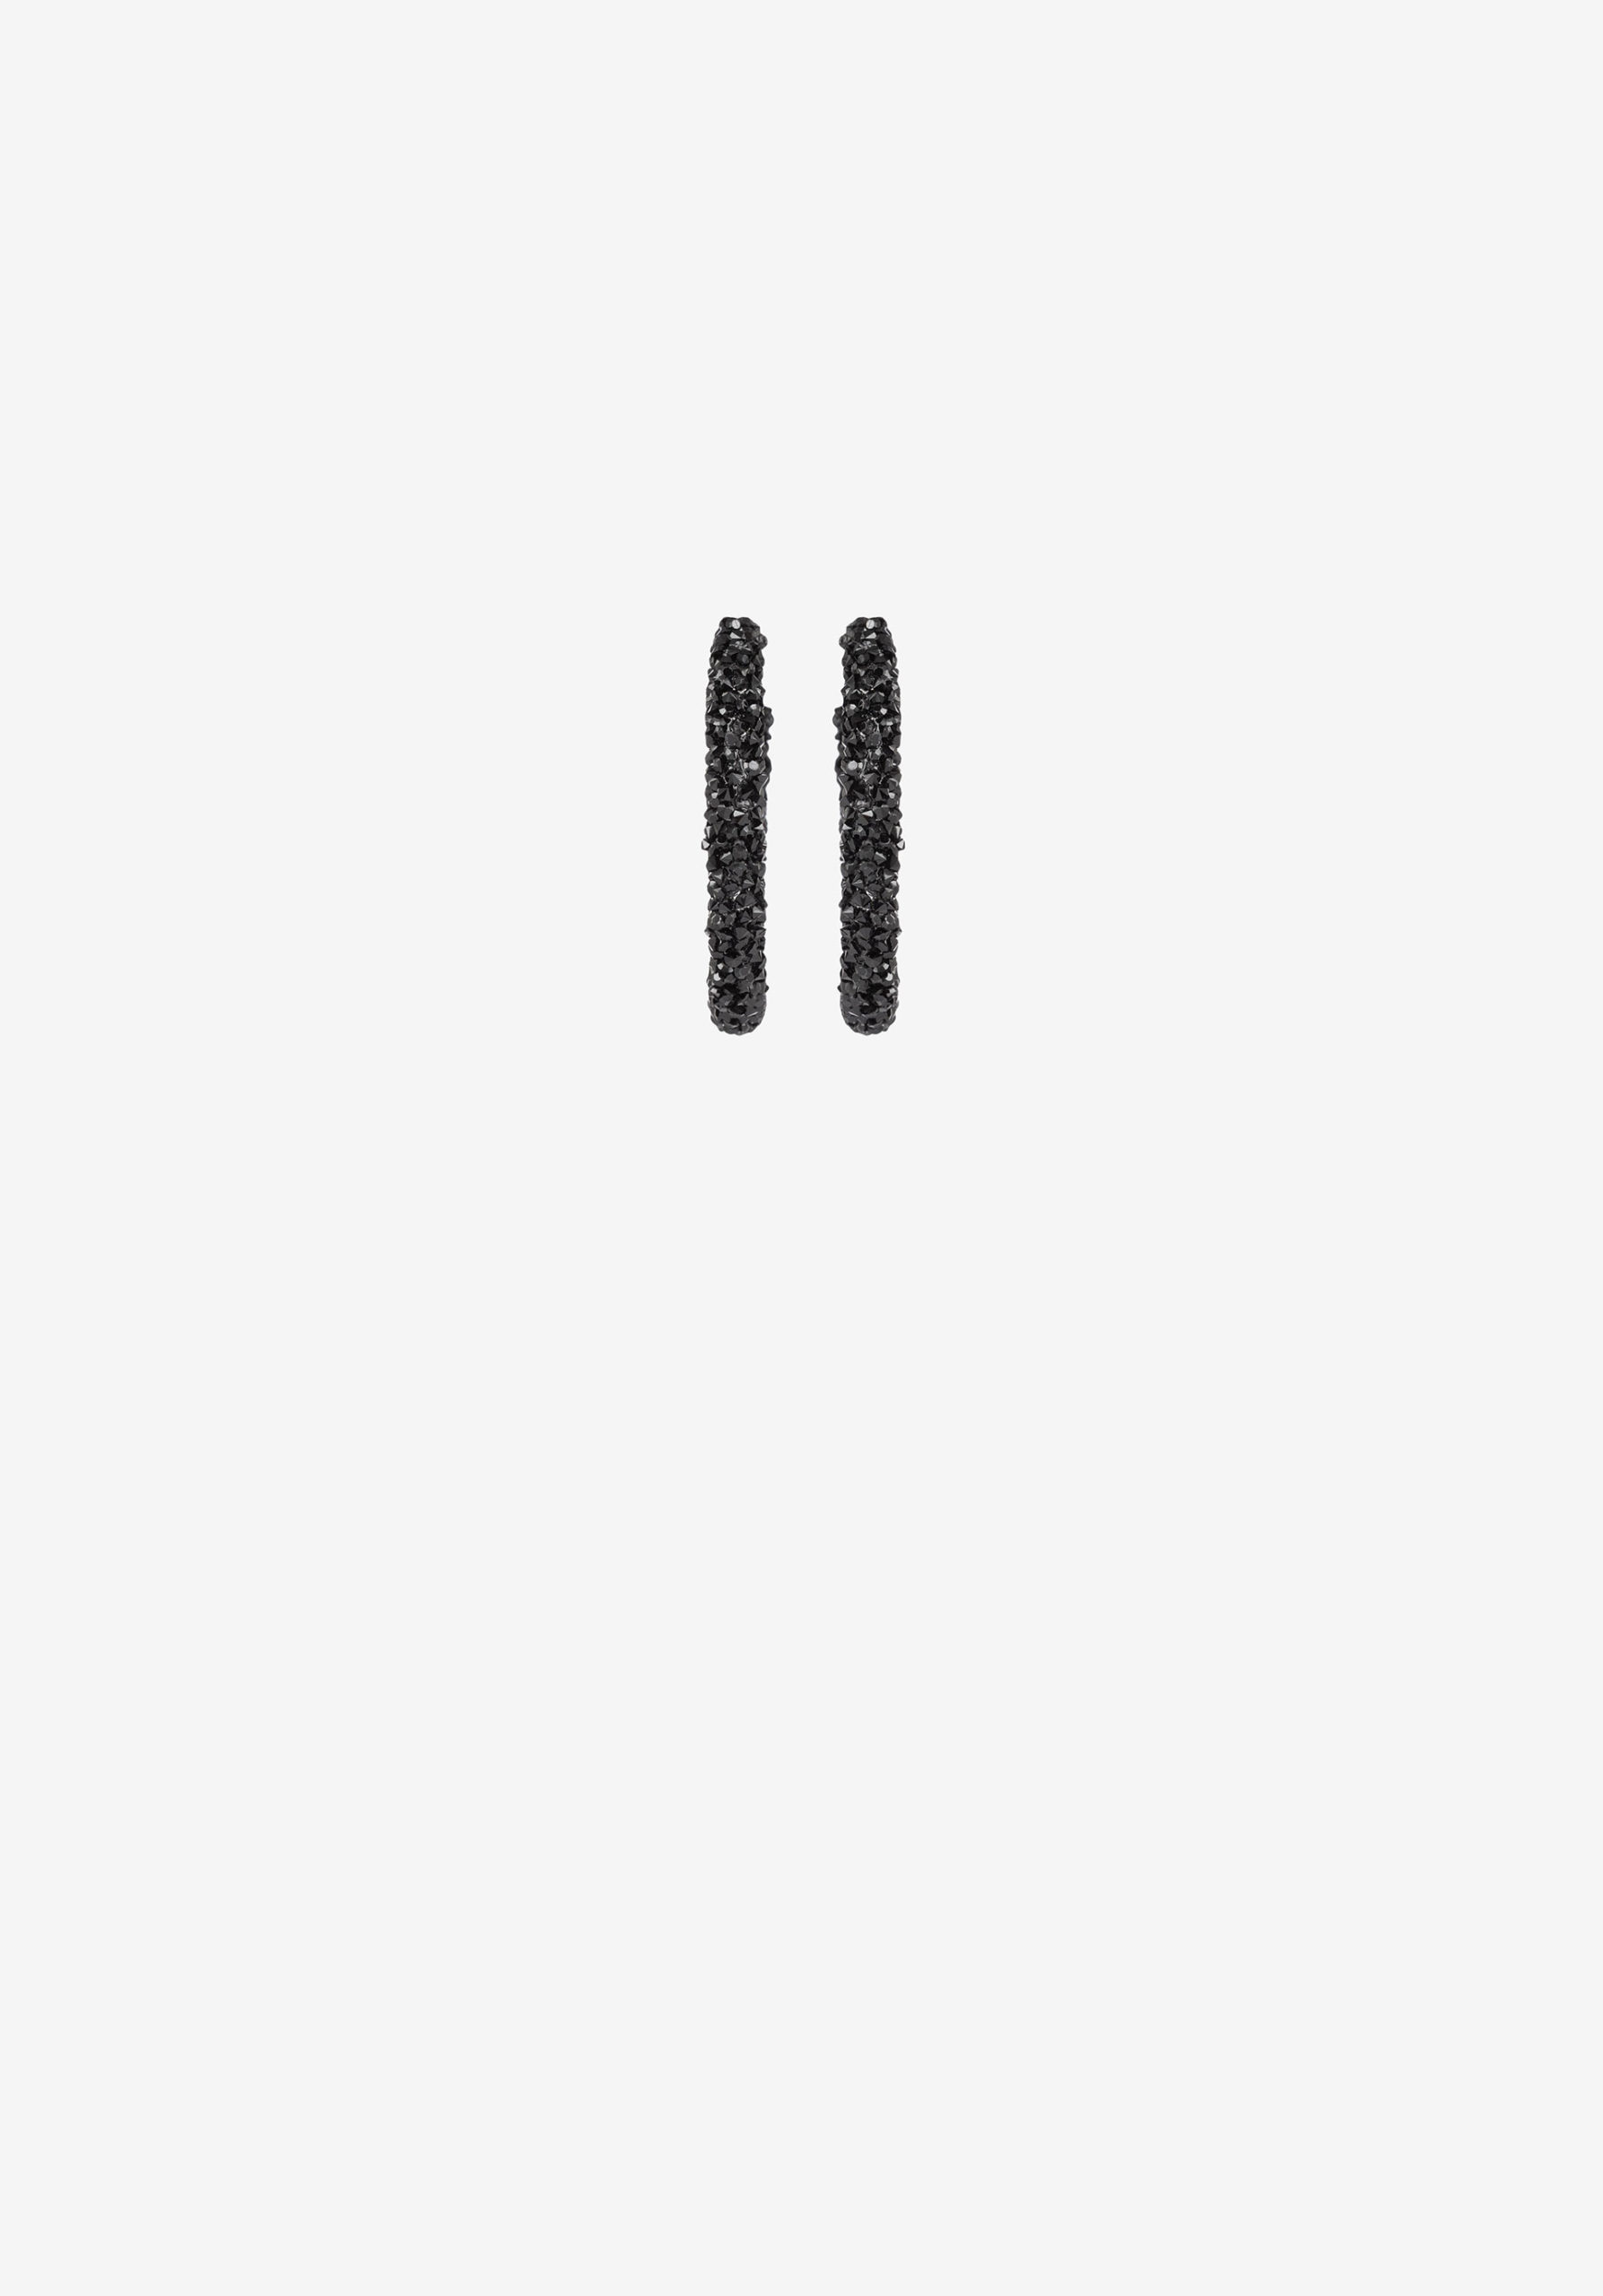 Pendientes de Aros con piedras en color negro, modelo 71003891 de Vilanova.